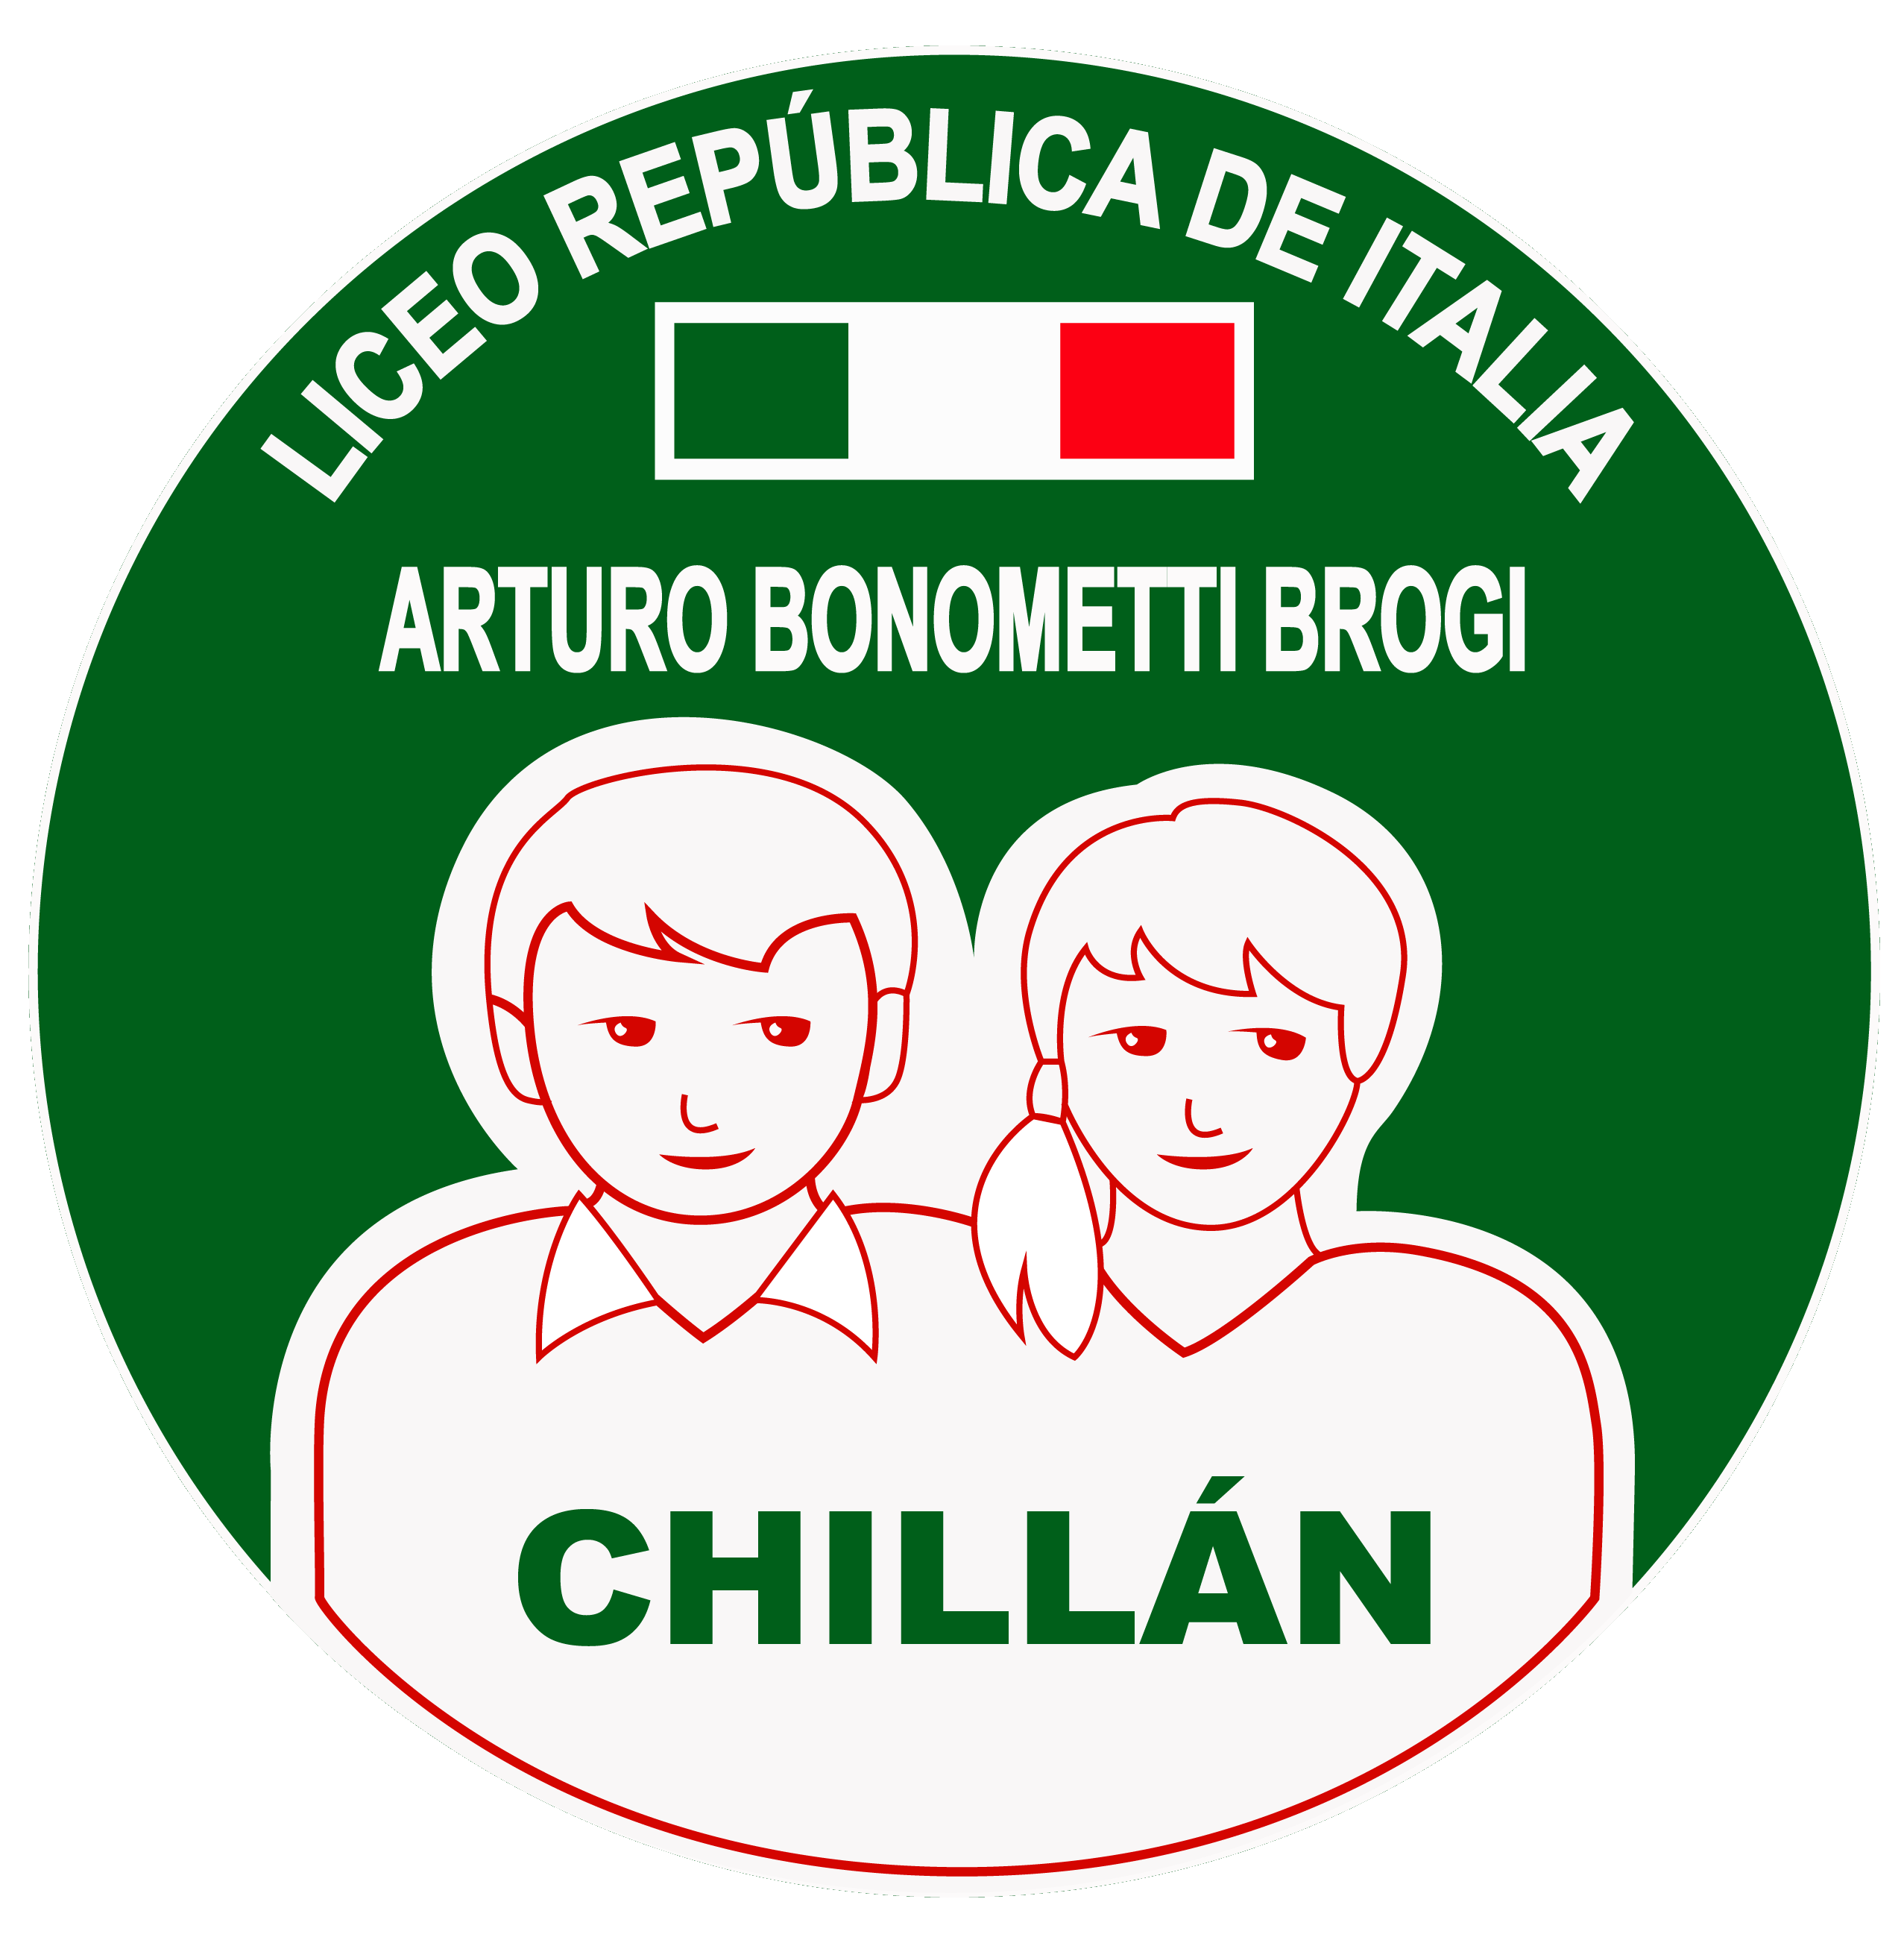 Liceo Republica de Italia – Chillán